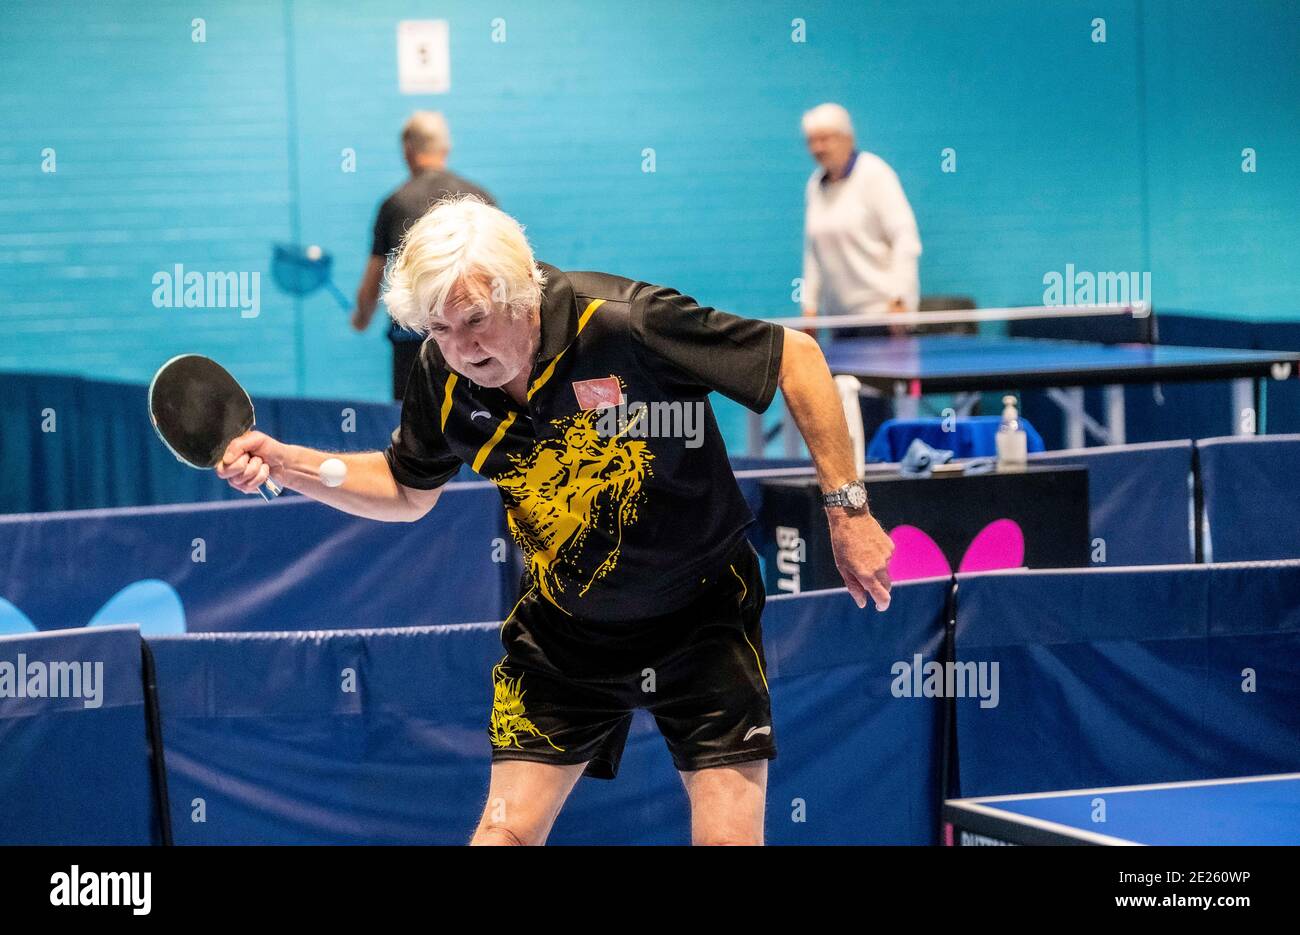 Personnes âgées et handicapées jouant au tennis de table Banque D'Images